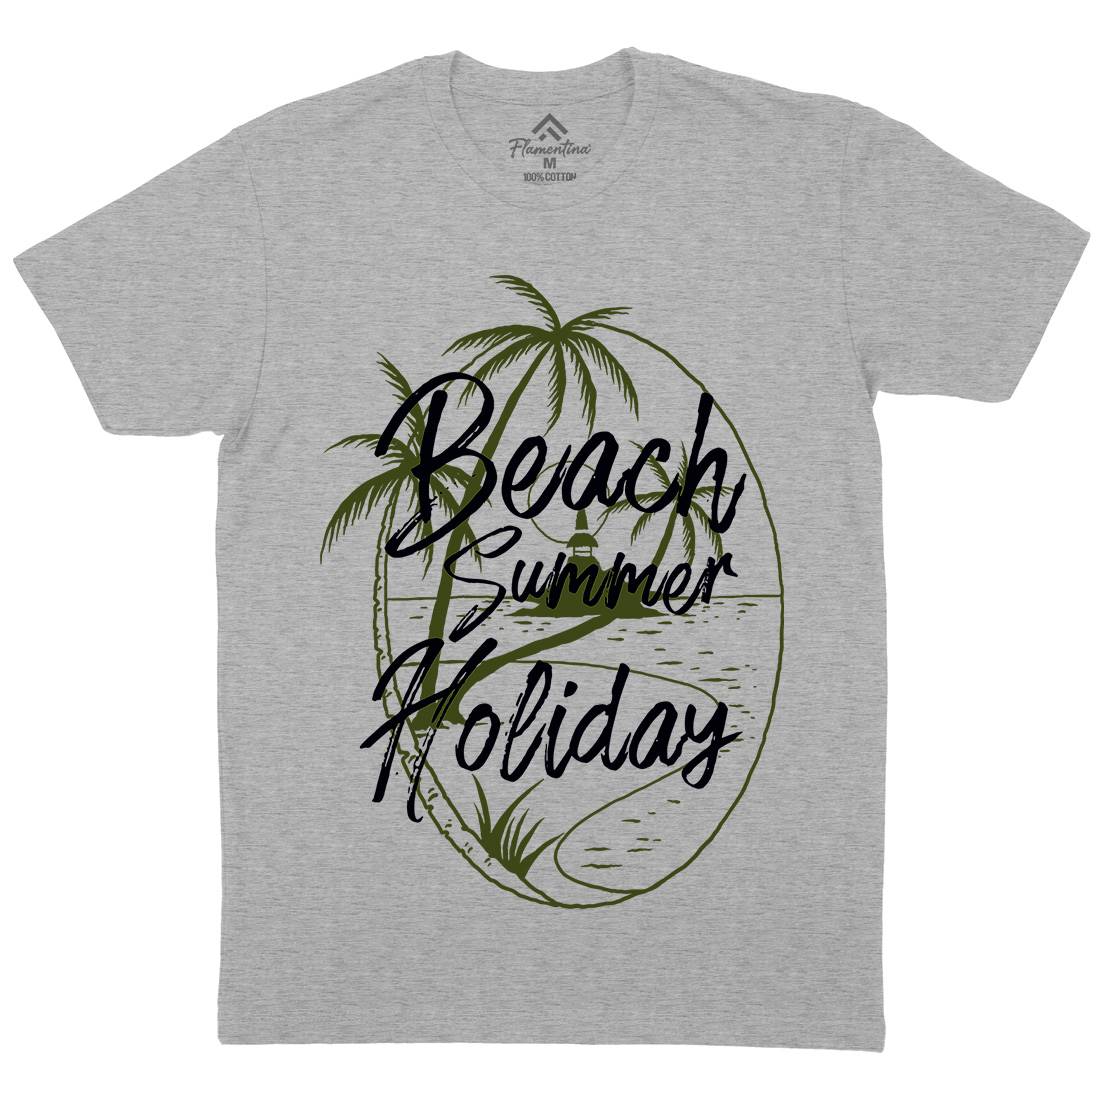 Beach Island Mens Organic Crew Neck T-Shirt Nature C709